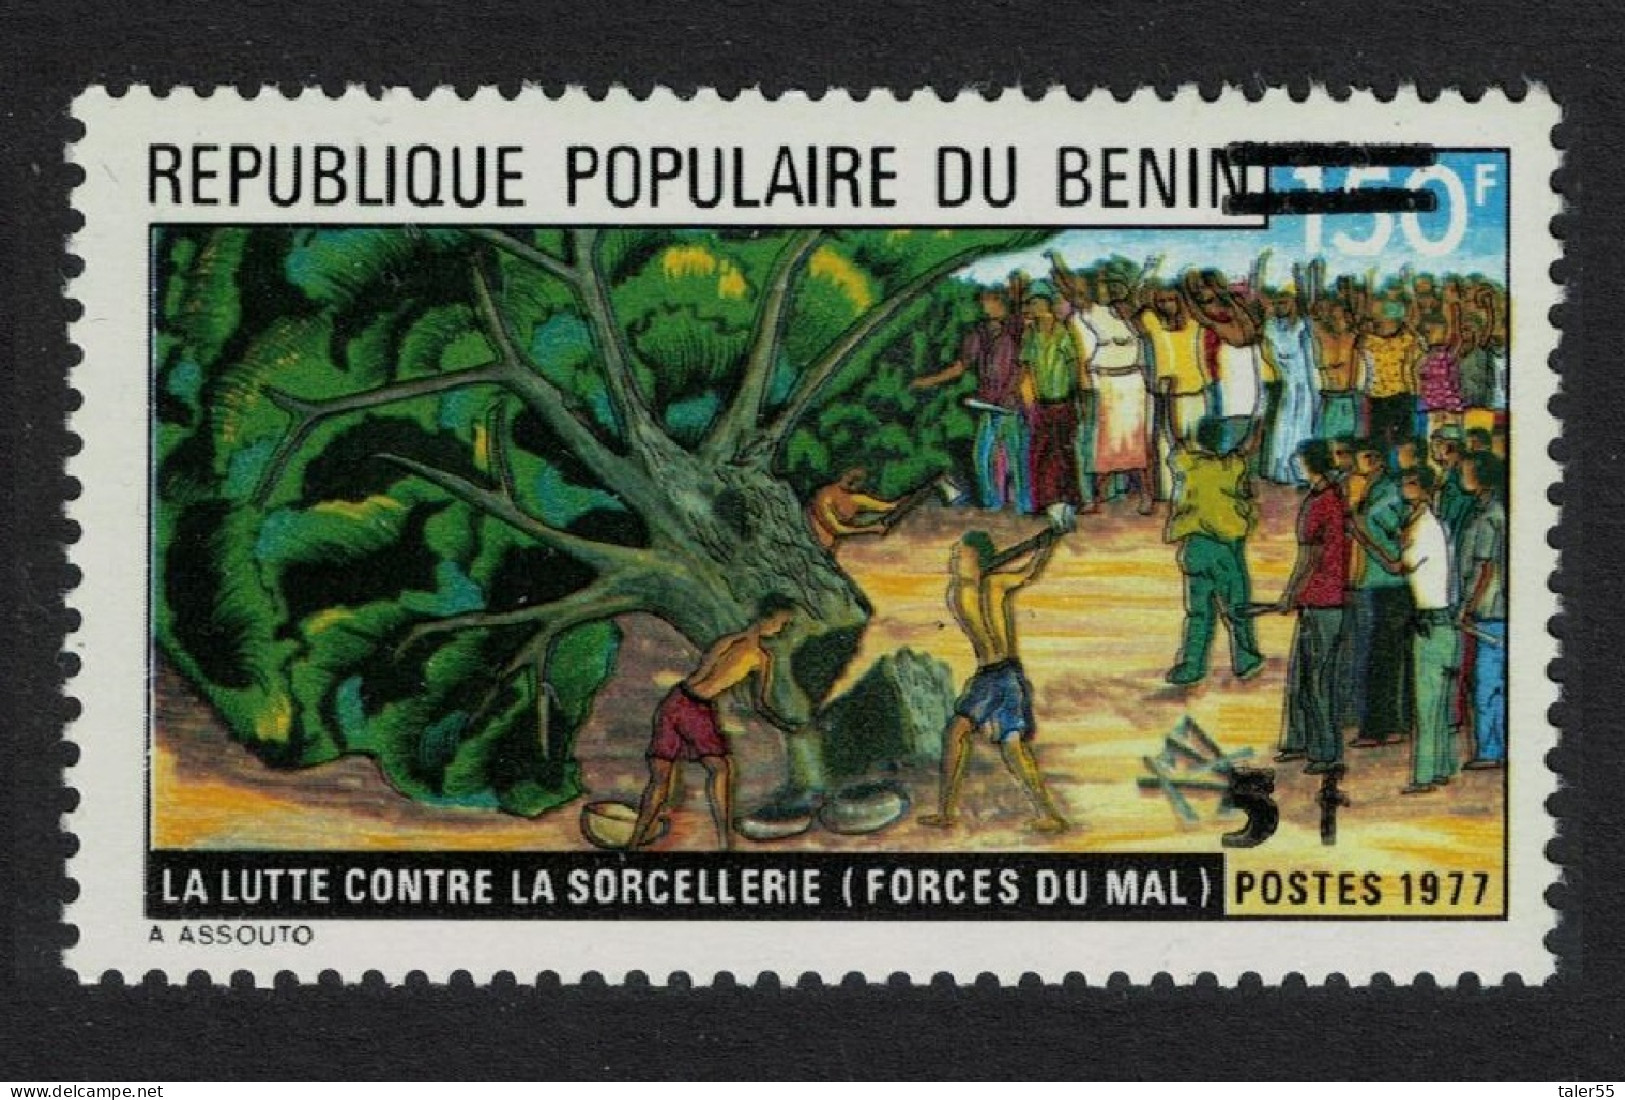 Benin Fight Against Witchcraft Ovpt 1984 MNH SG#922 MI#358 - Benin - Dahomey (1960-...)